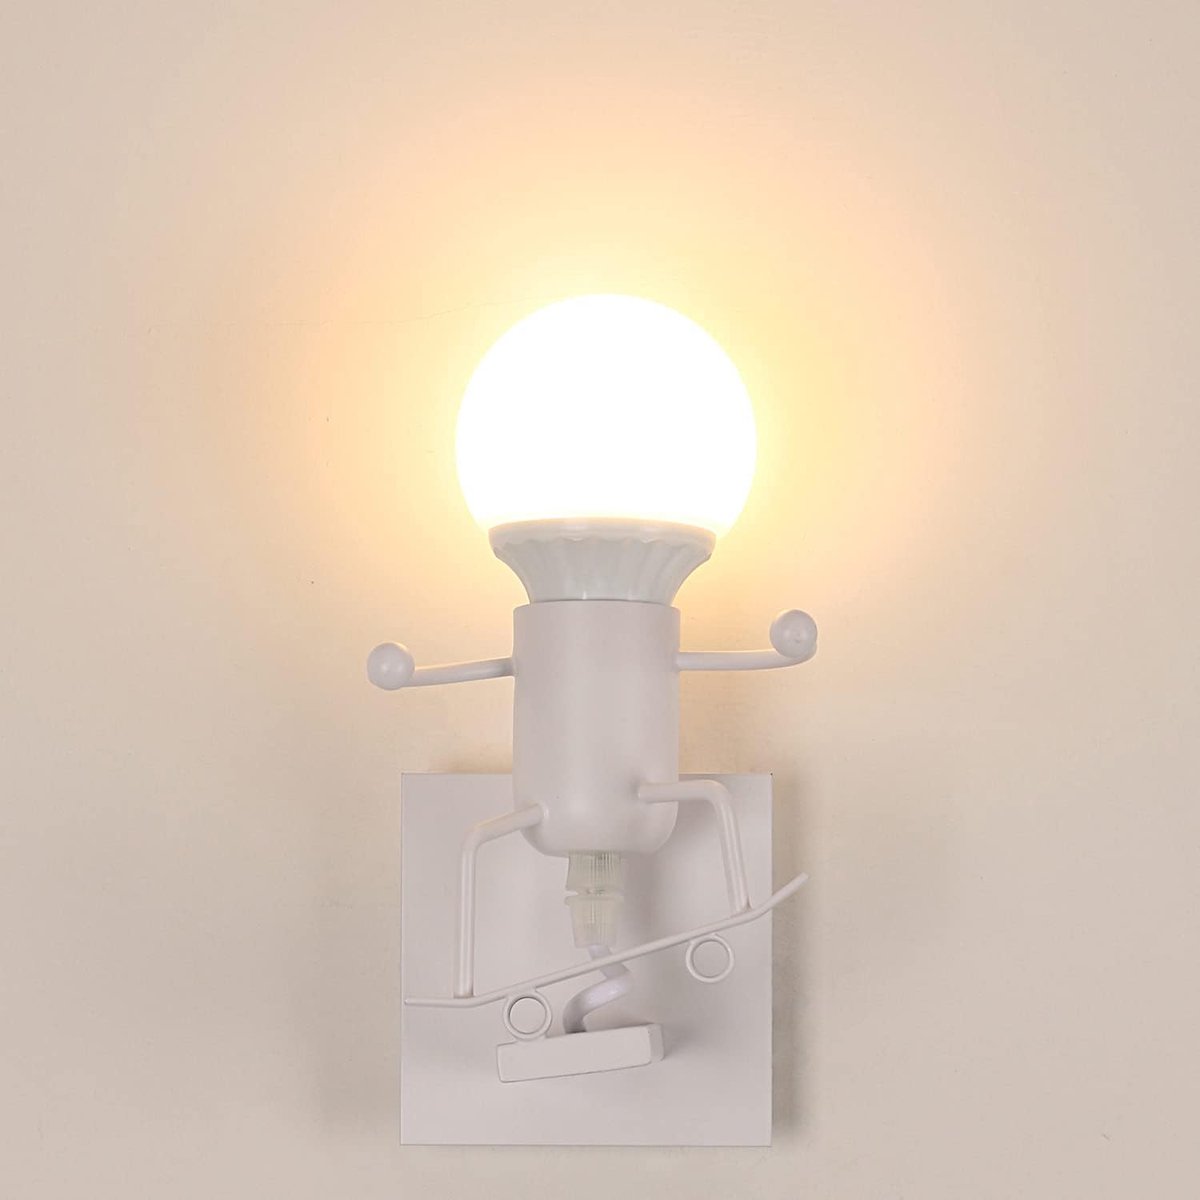 Goeco Wandlamp - 19cm - Klein - E27 - Vintage Industriële Wandlamp - Lamp Niet Inbegrepen